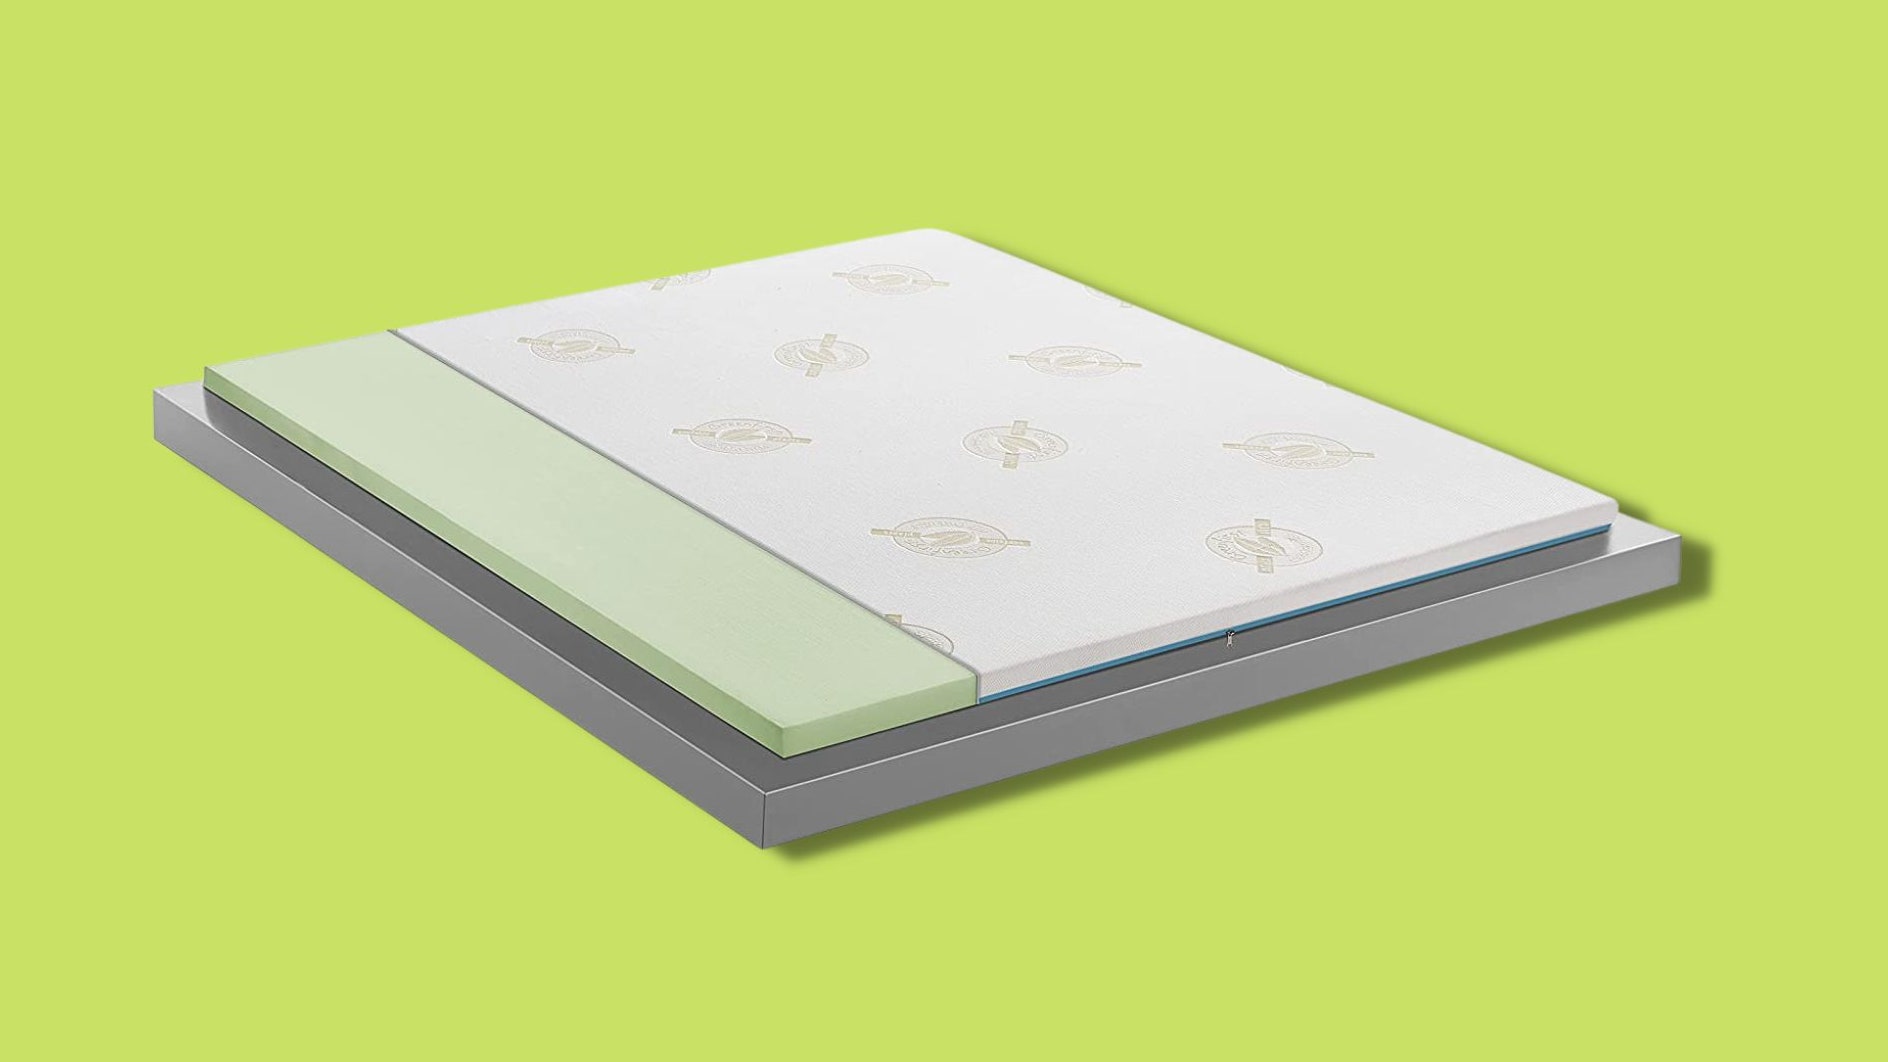 I migliori topper da mettere sul materasso per schiacciare pisolini da sogno
| Wired Italia